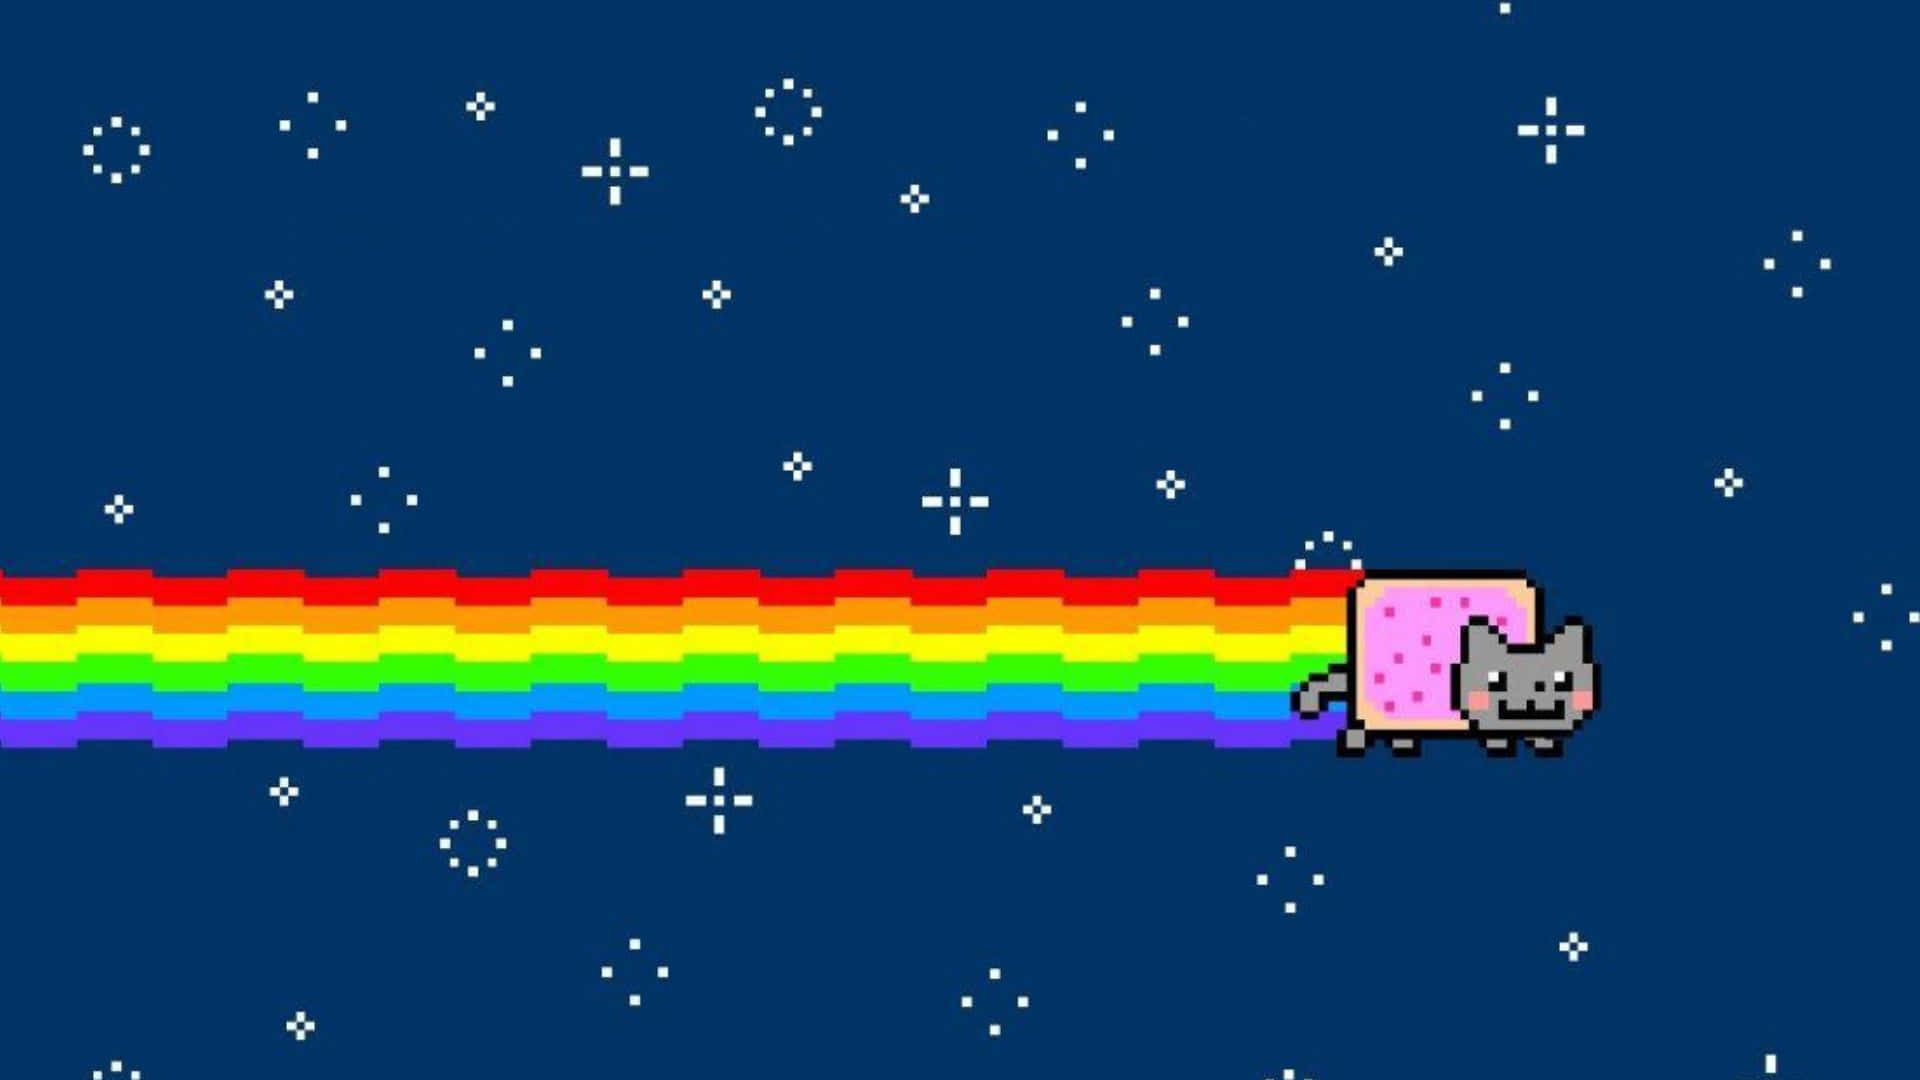 Avventuraarcobaleno Di Nyan Cat Colorato